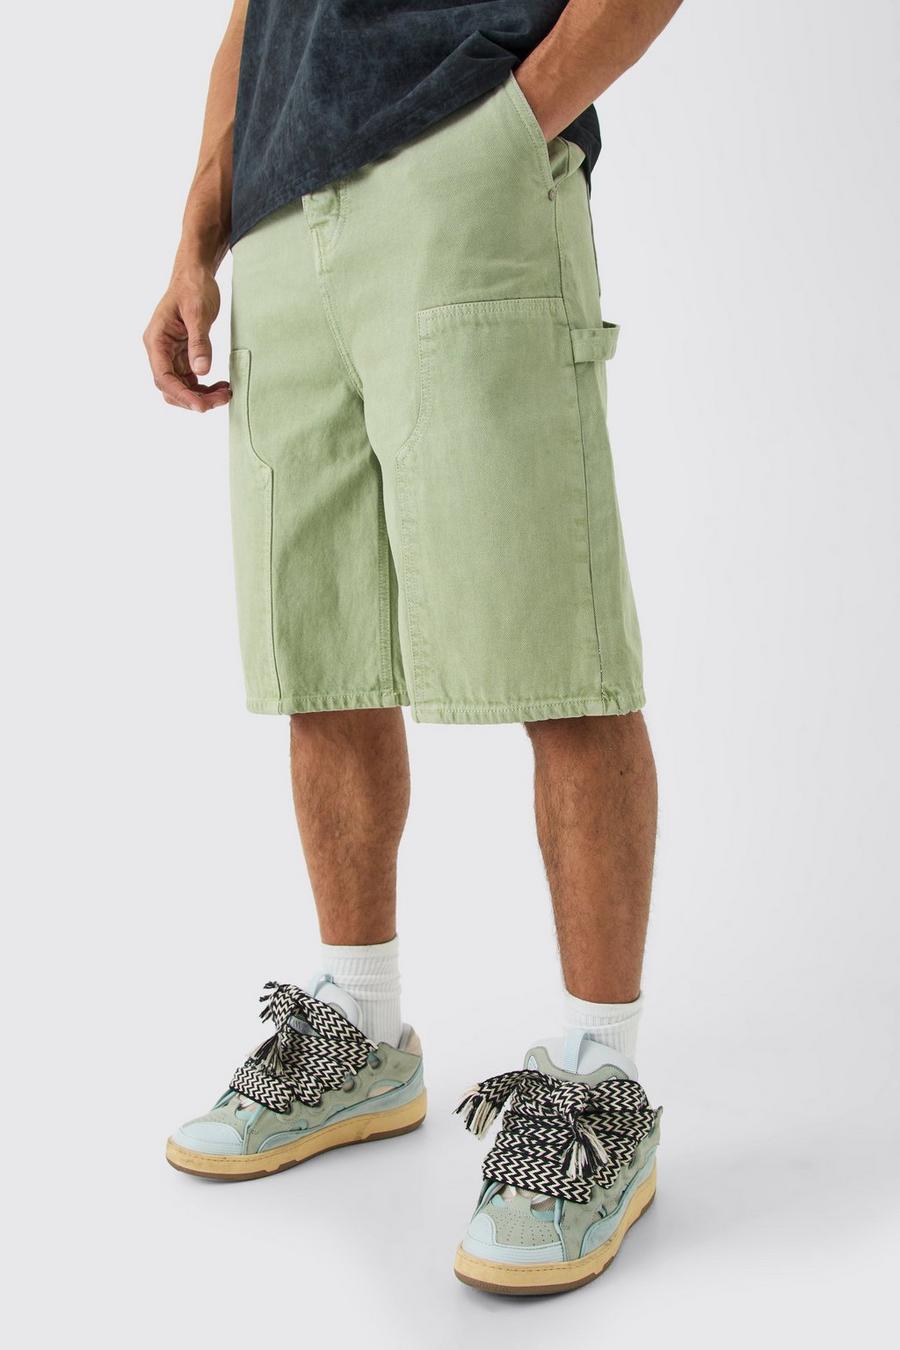 Pantaloni tuta in denim sovratinti color salvia con dettagli stile Carpenter, Sage